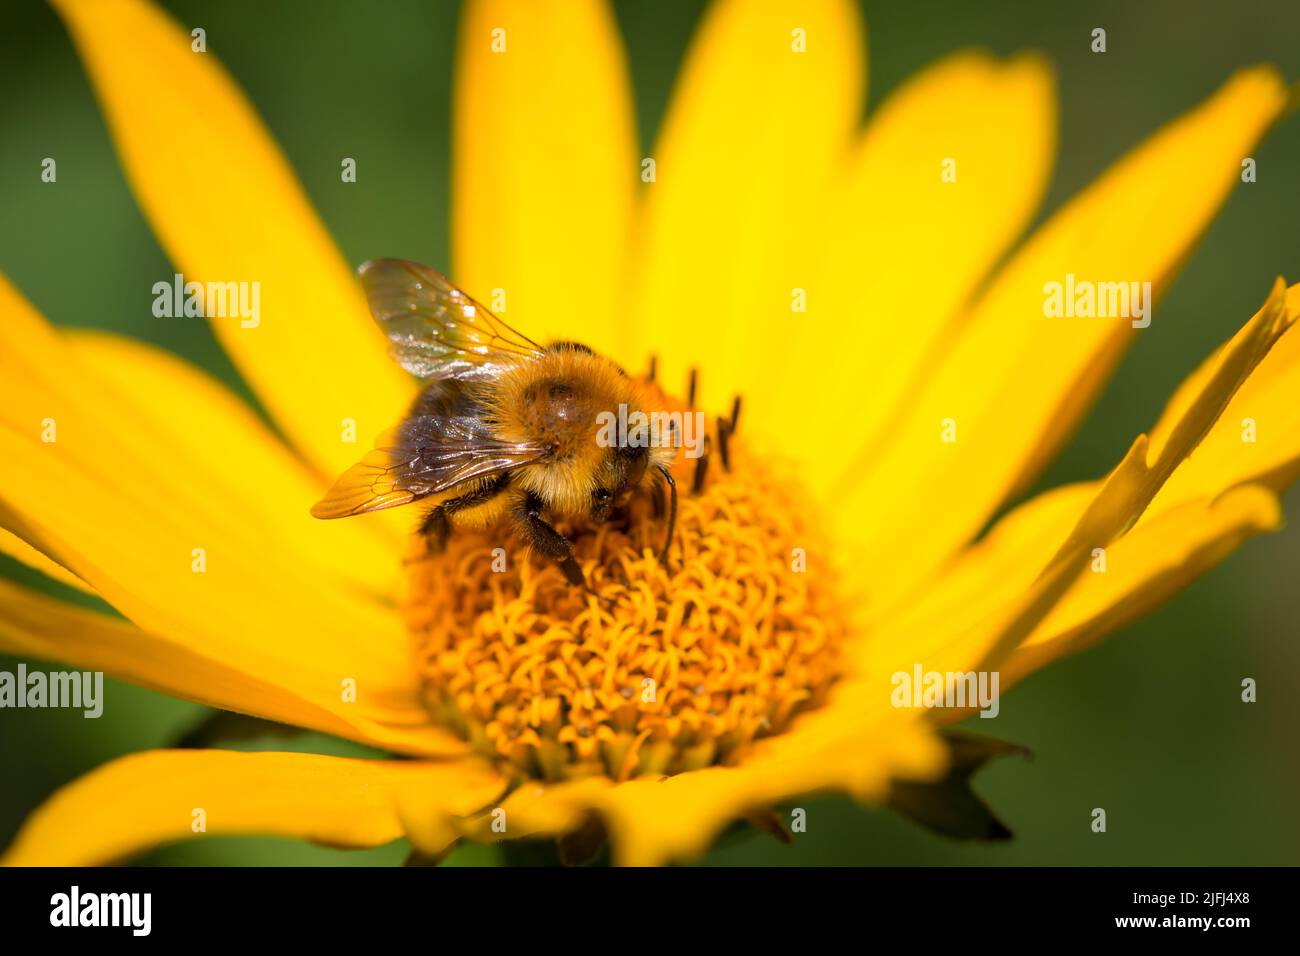 Abeja salvaje alimentándose en una flor amarilla Foto de stock